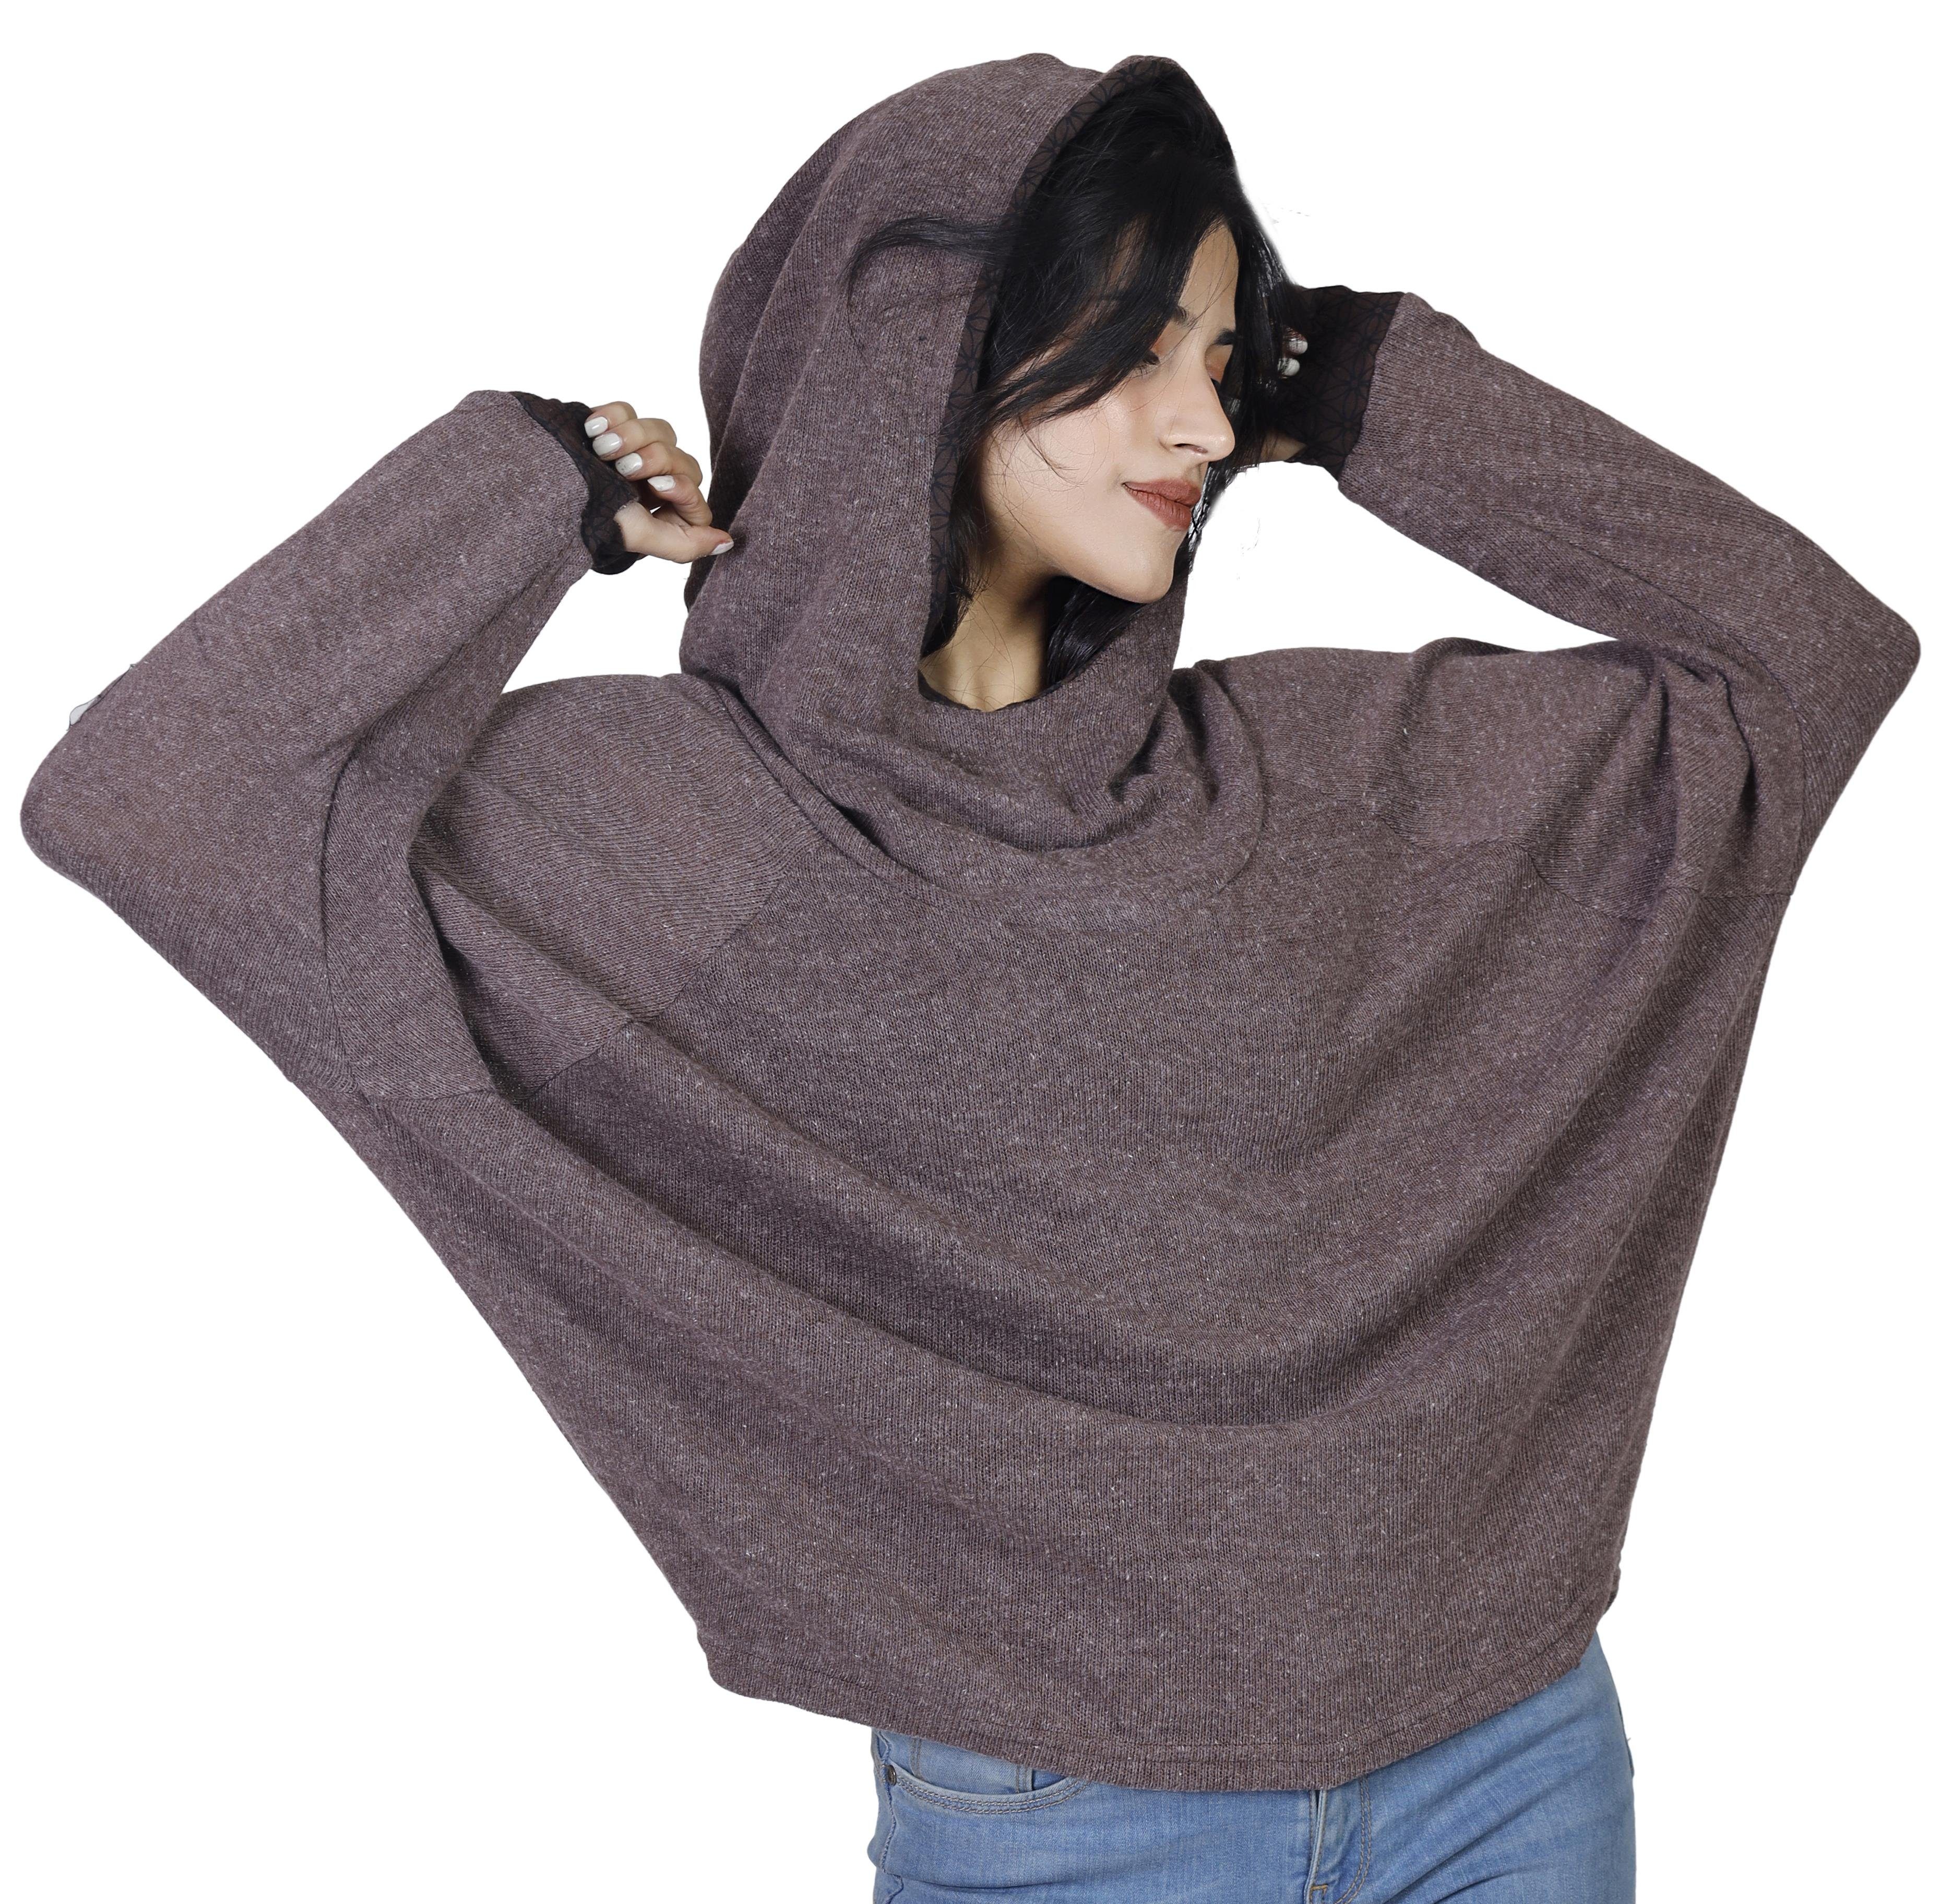 Guru-Shop Hoody, Bekleidung -.. Kapuzenpullover braun Sweatshirt, alternative Pullover, Longsleeve